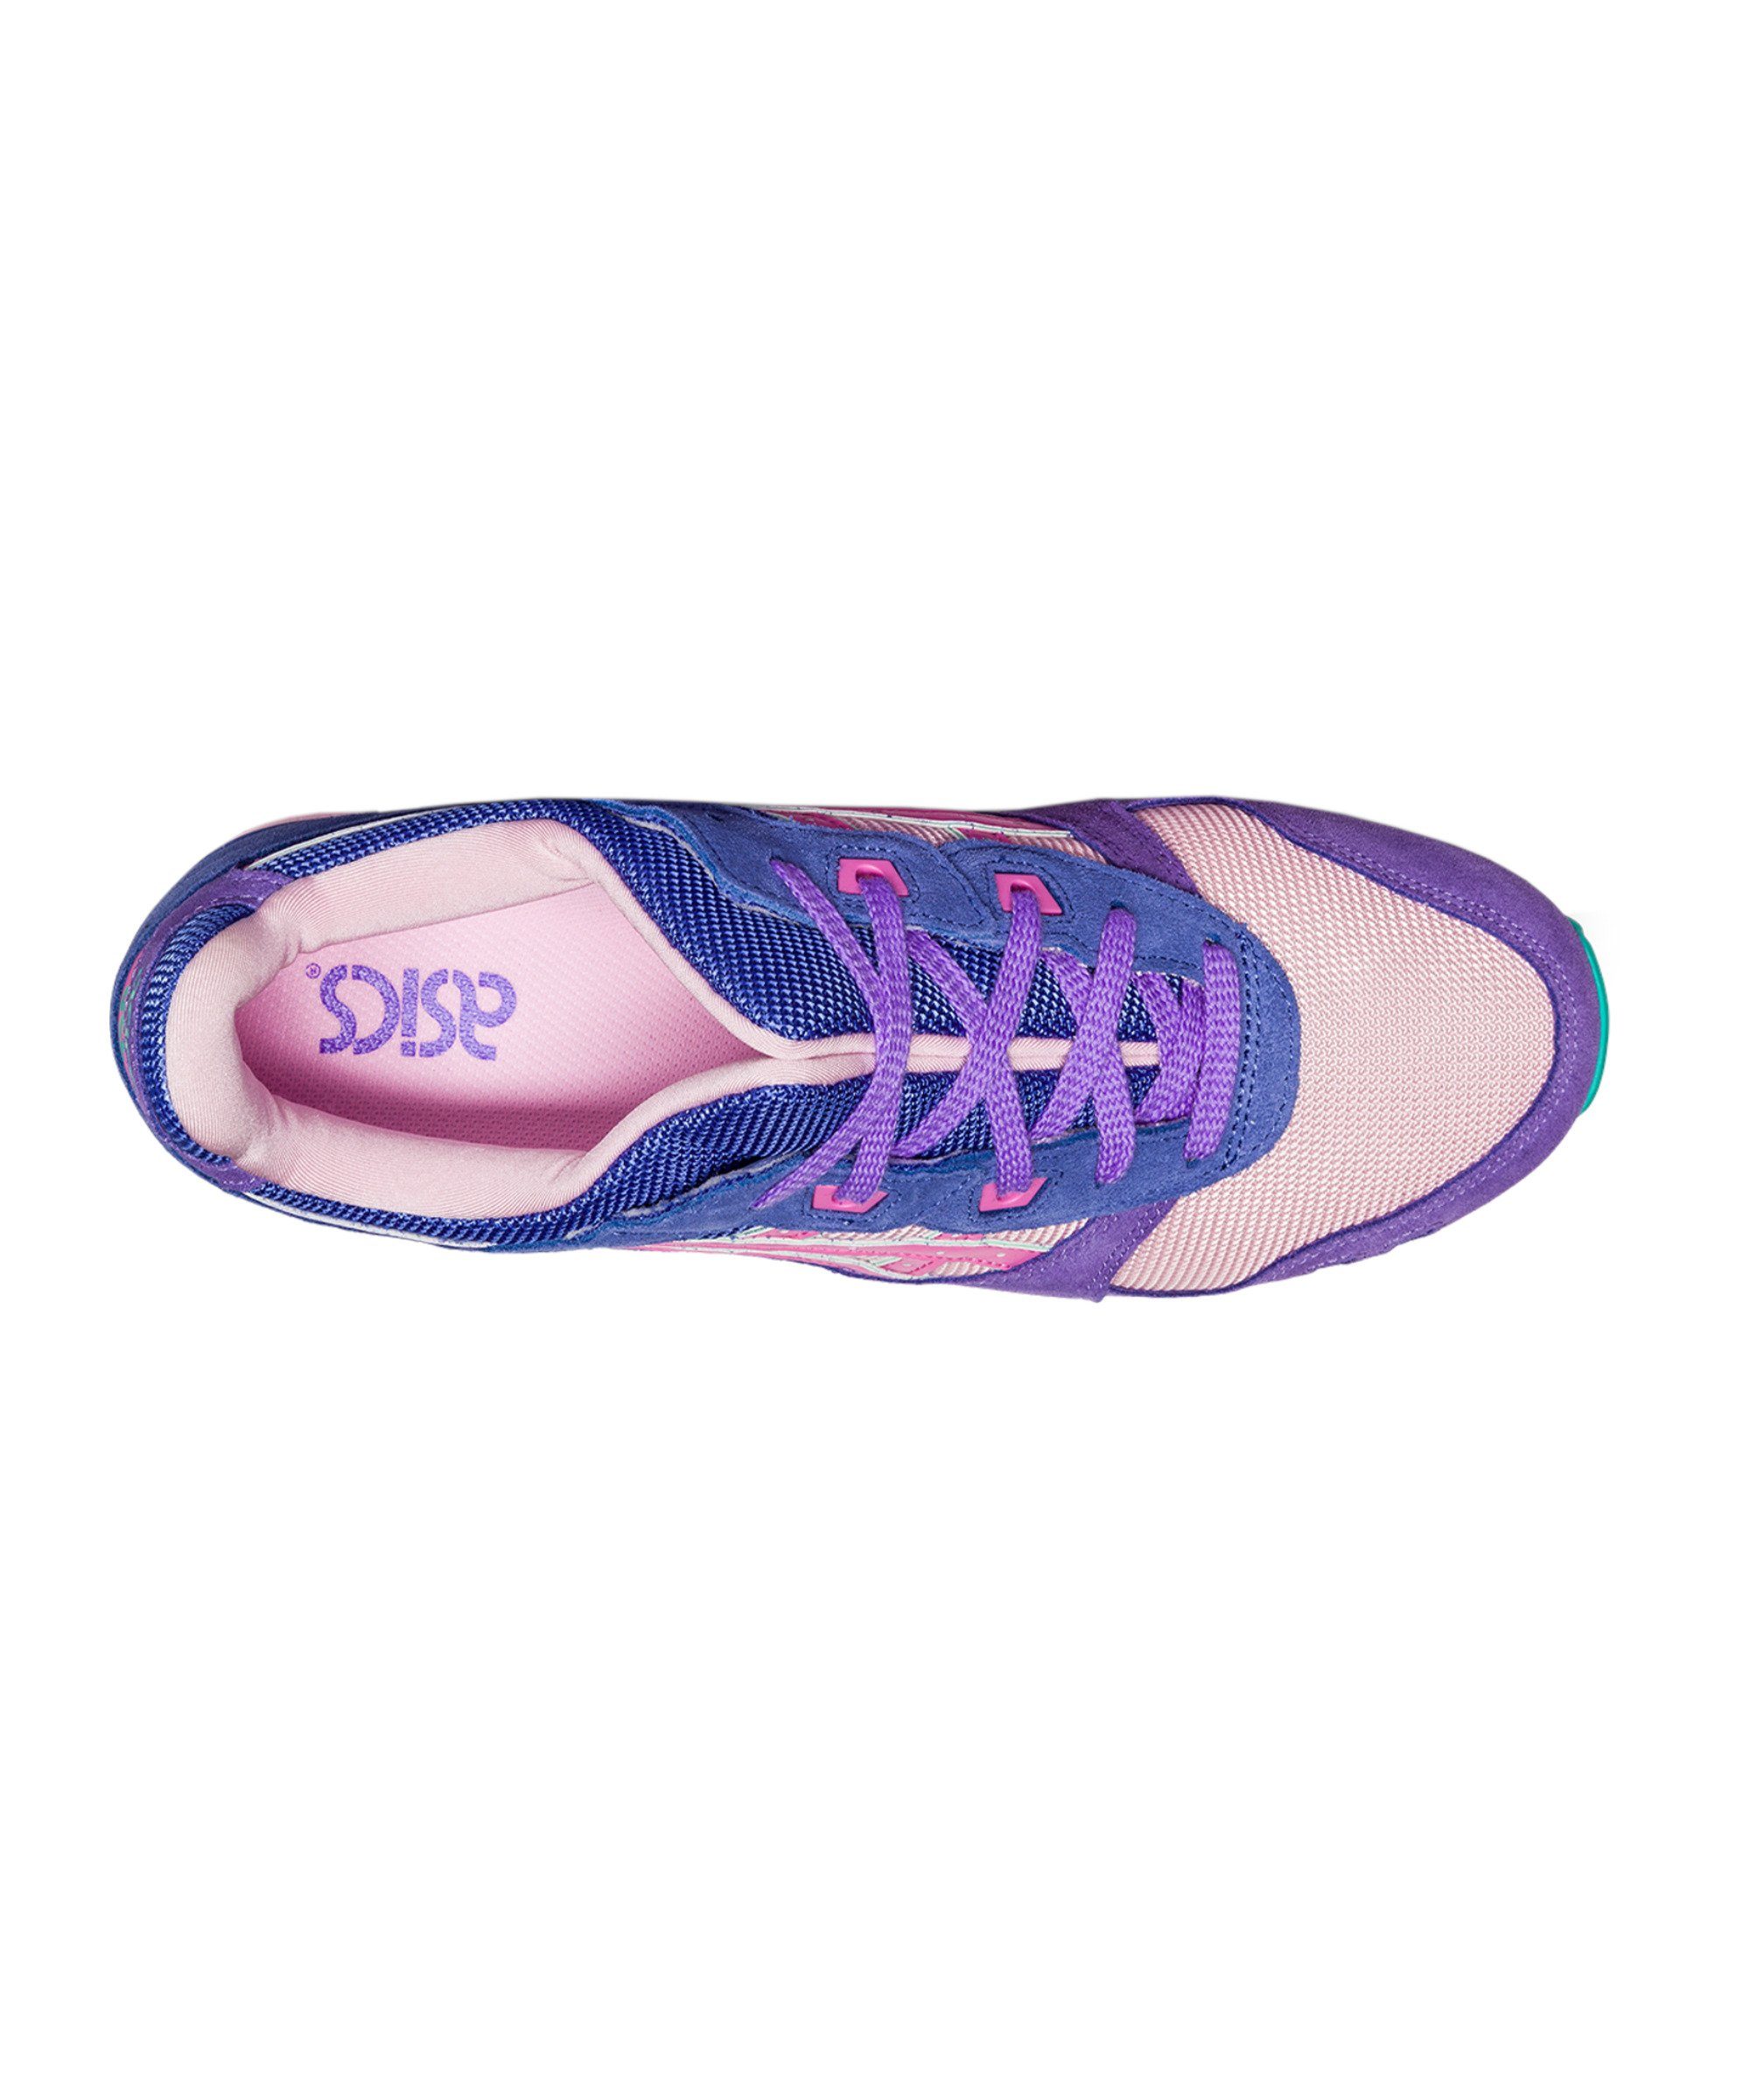 OG Sneaker III Gel-Lyte Asics blaulilarosa